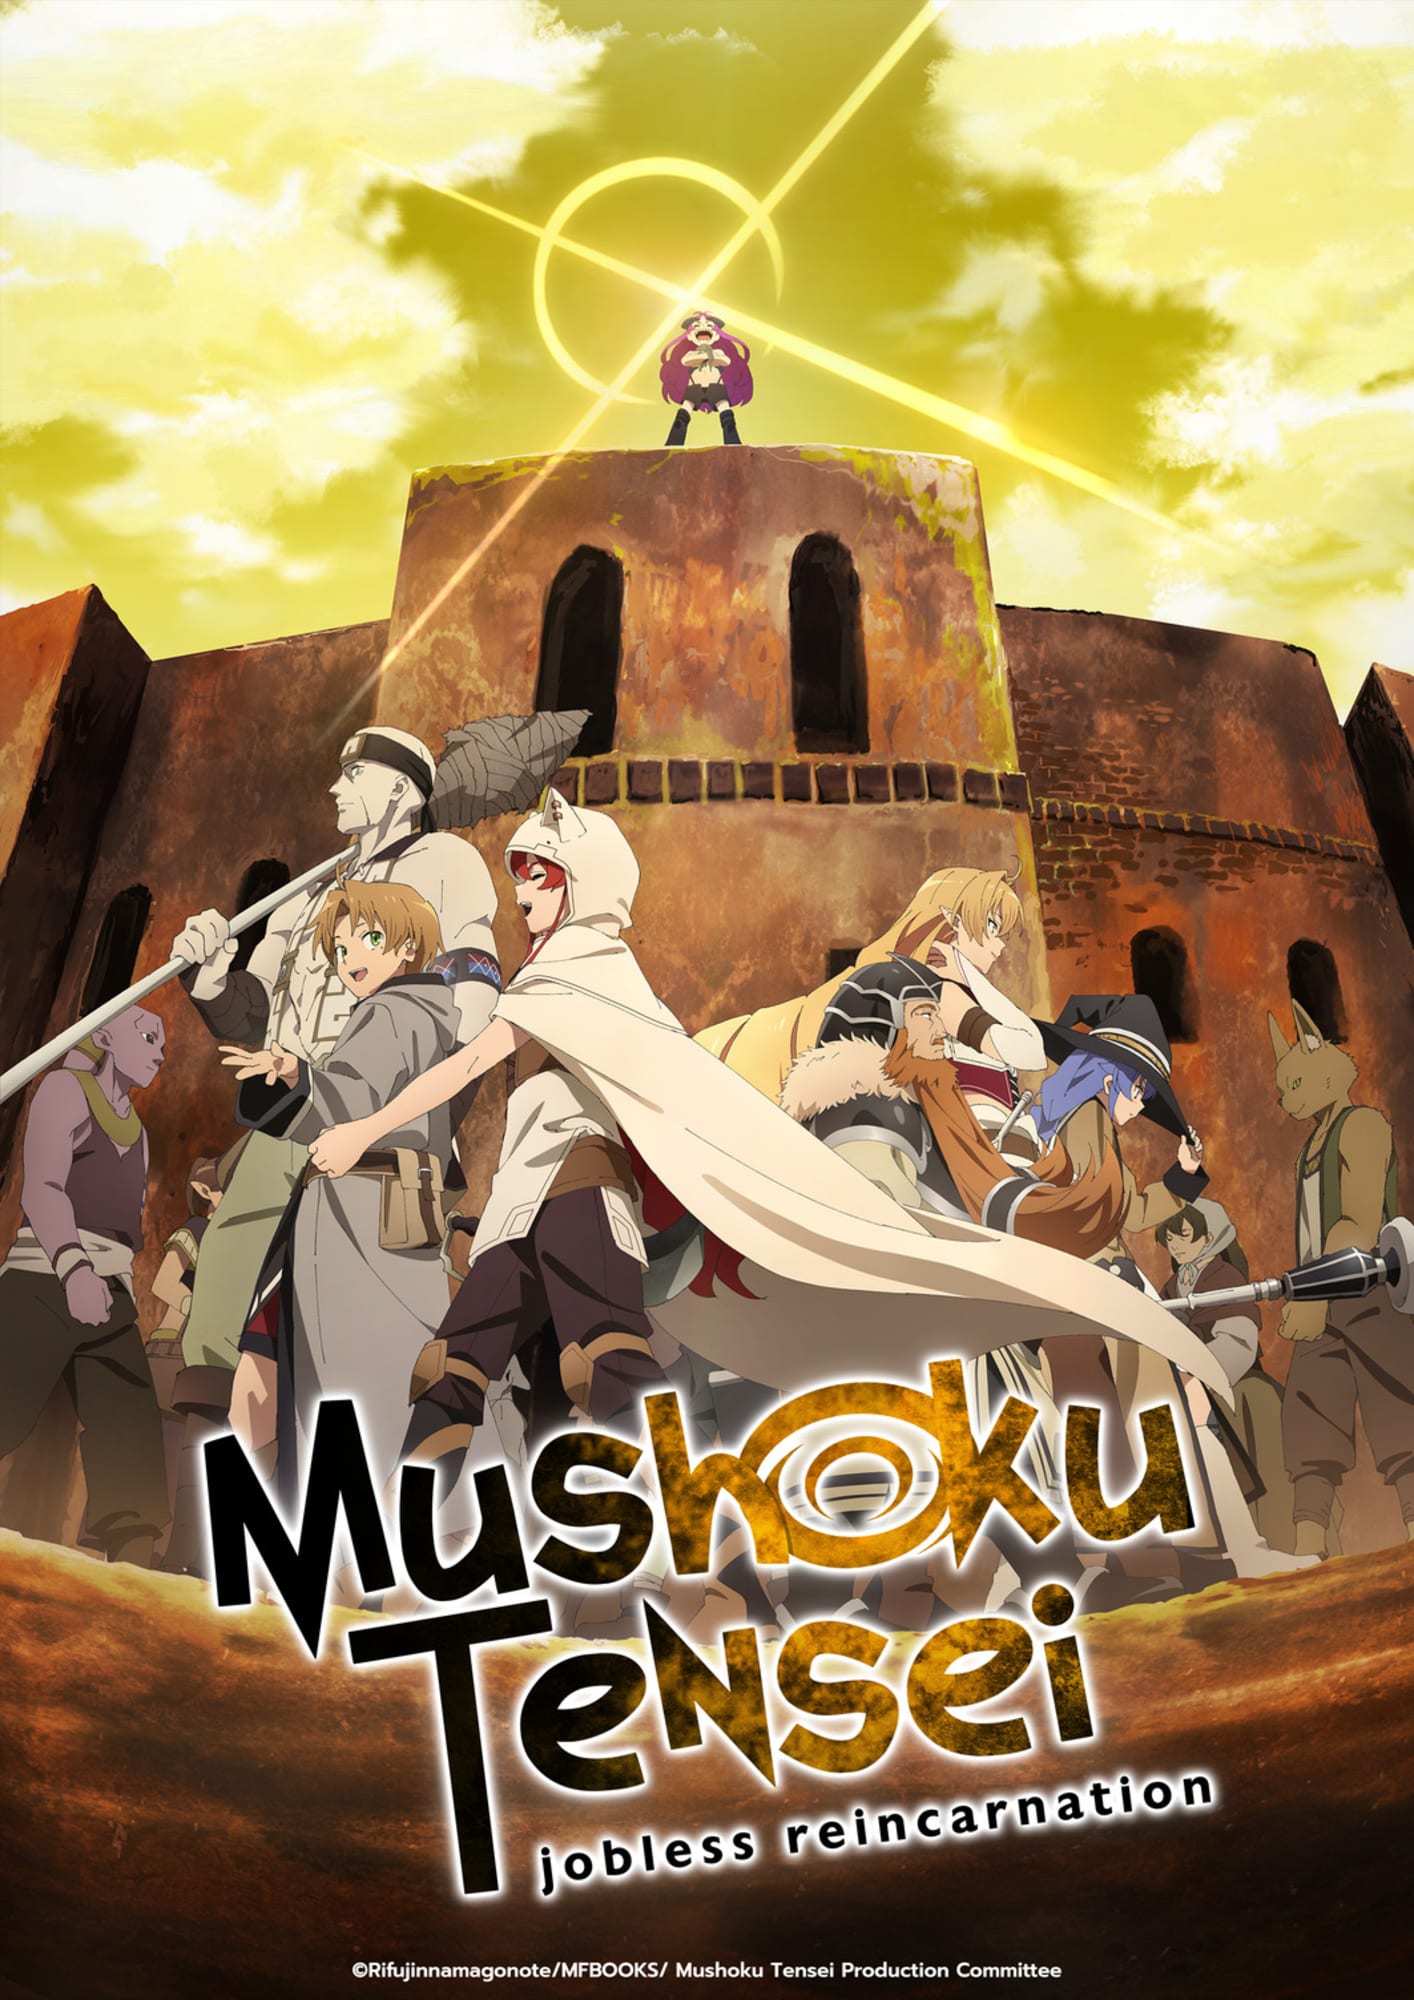 Mushoku Tensei on X: Anime : Mushoku Tensei